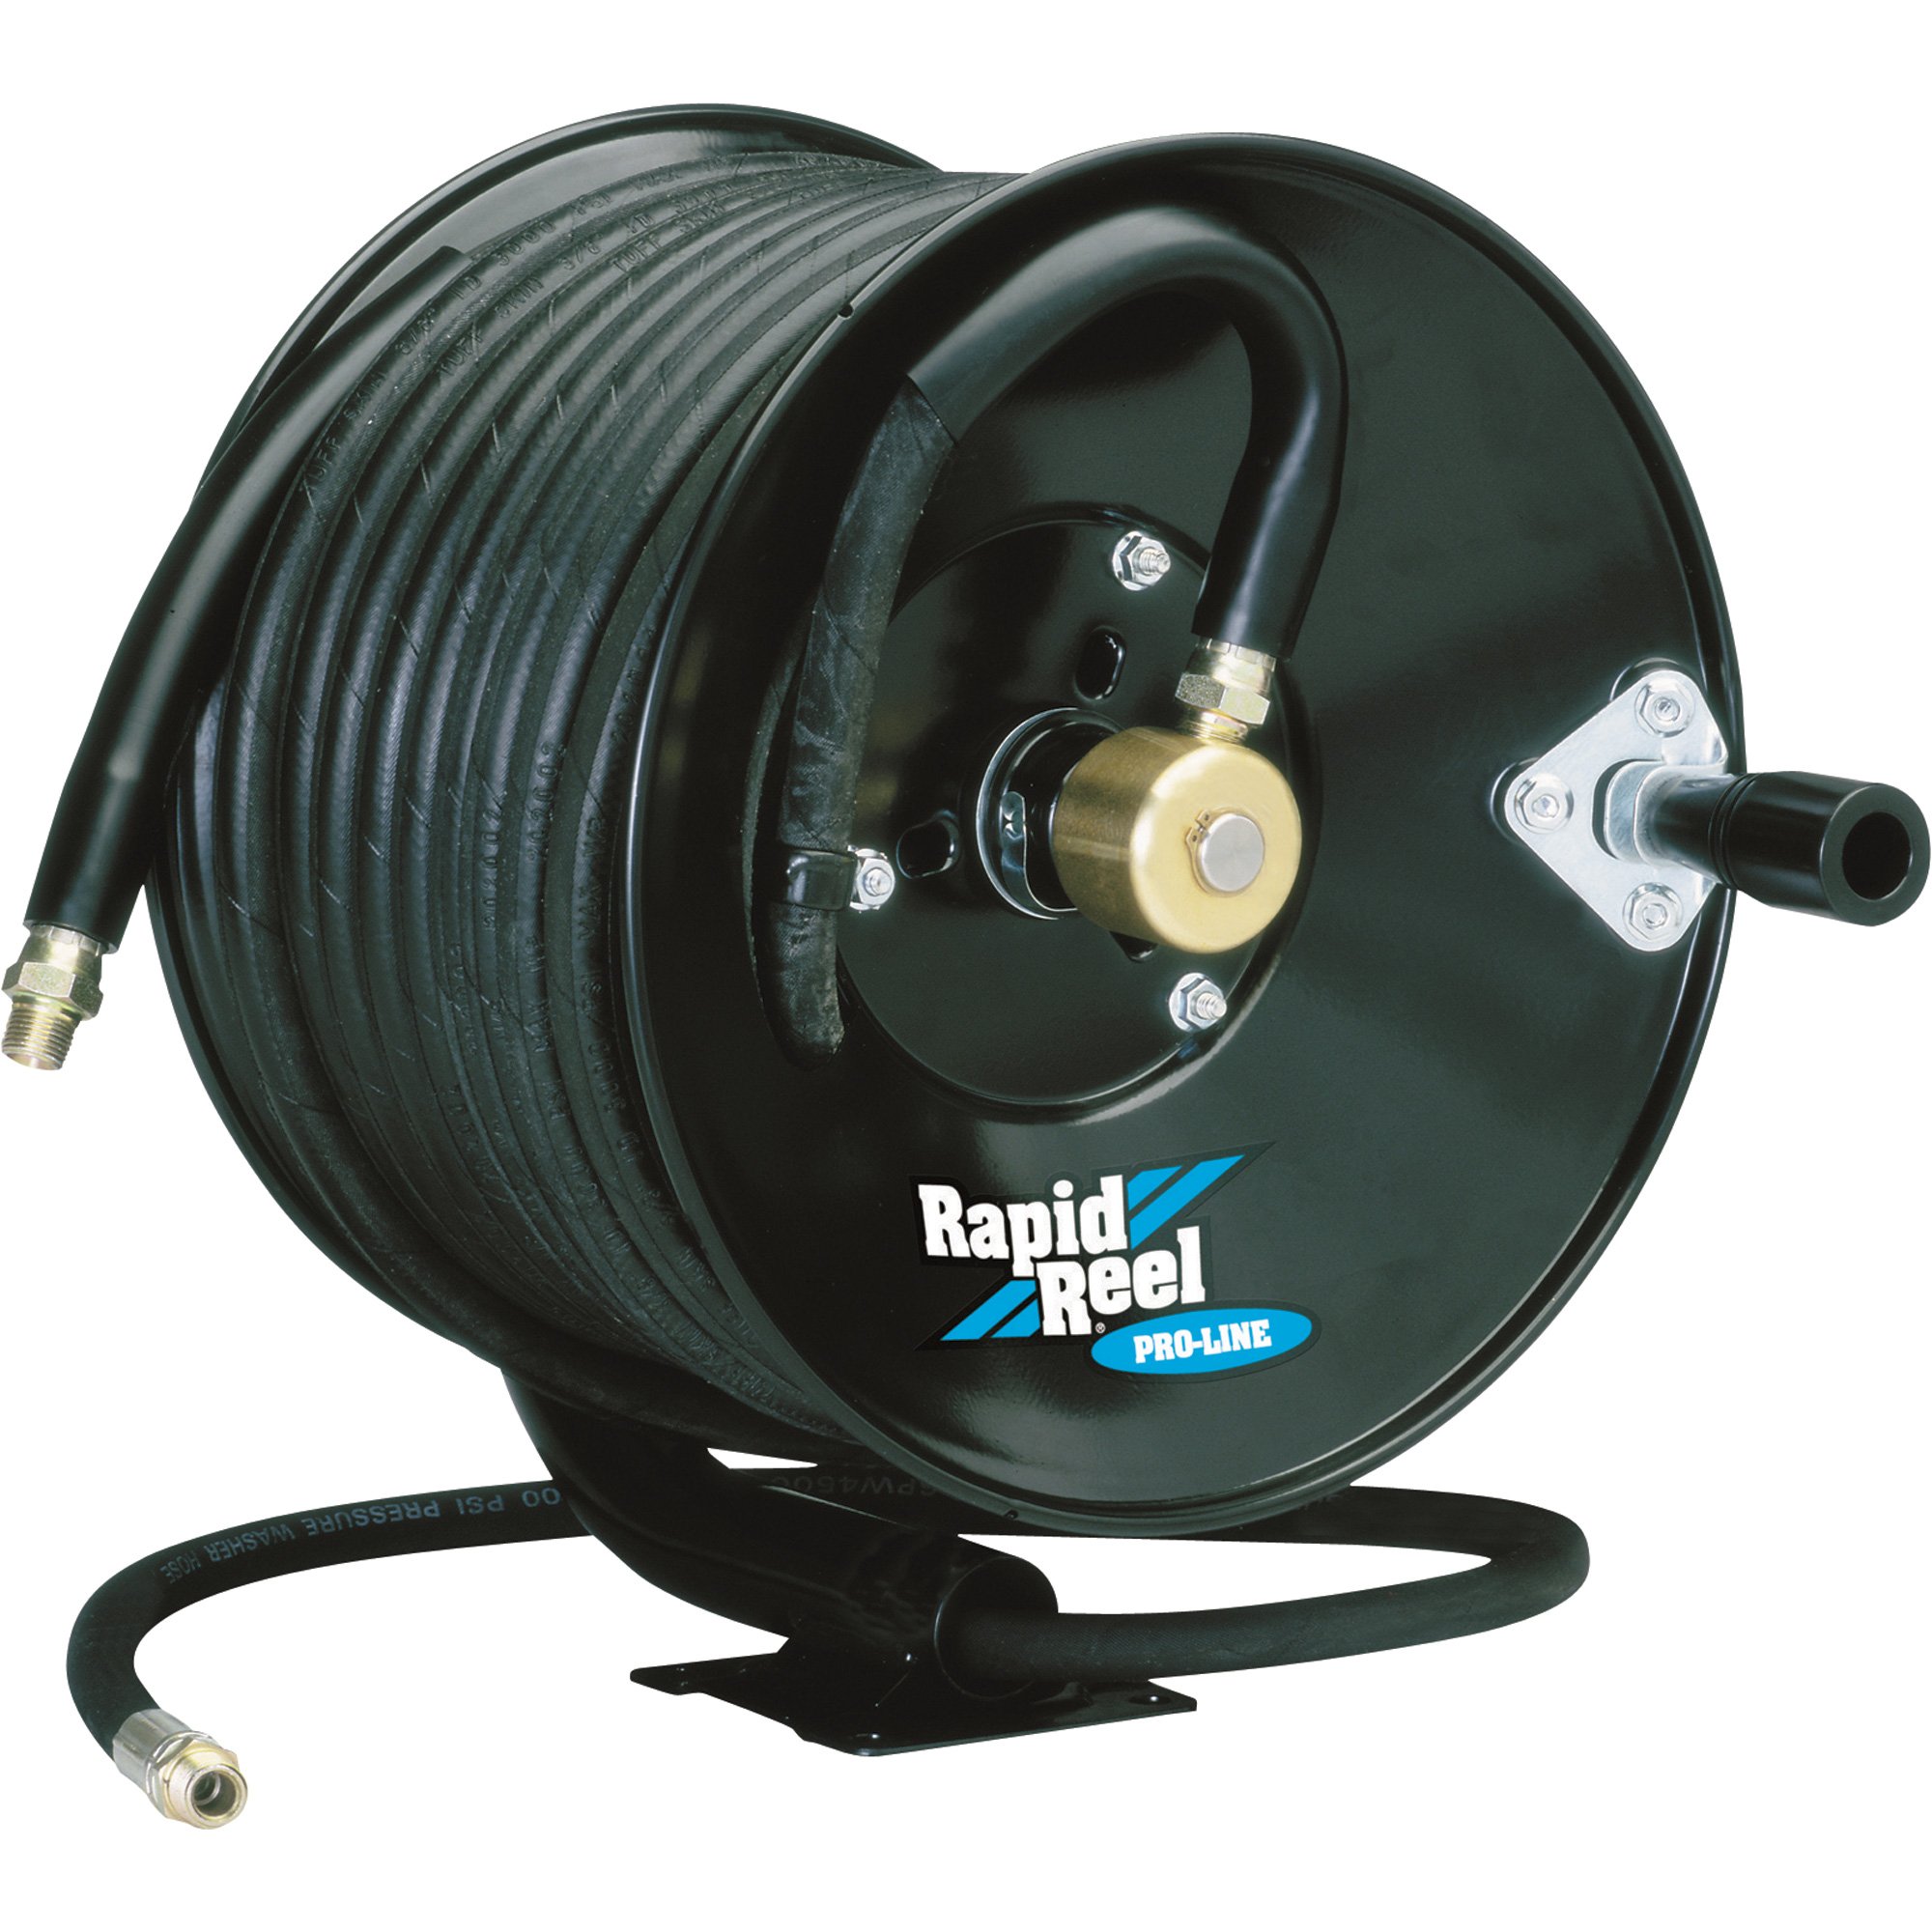 Rapid Reel Pressure Washer Hose Reel — Holds 3/8in. x 100ft. Hose, 4500 PSI